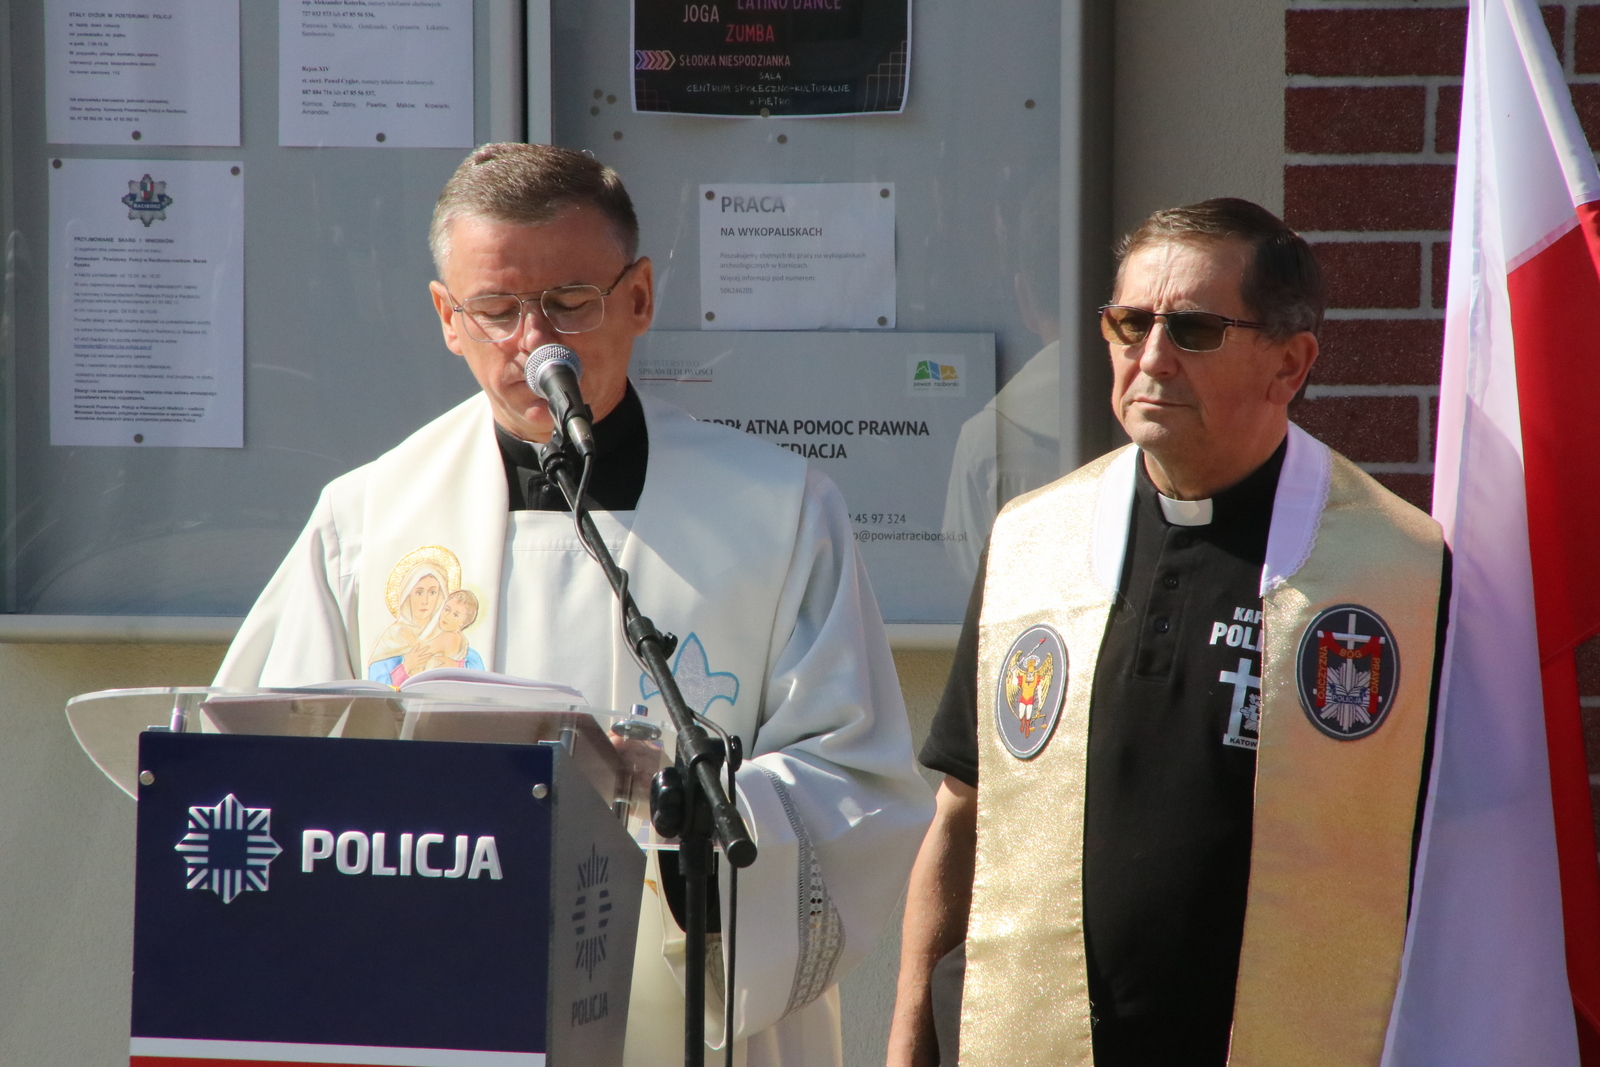 Posterunek poświęcili: ks. Damian Rangosz, proboszcz pietrowickiej parafii i ks. Joachim Gondro, kapelan śląskiej policji 